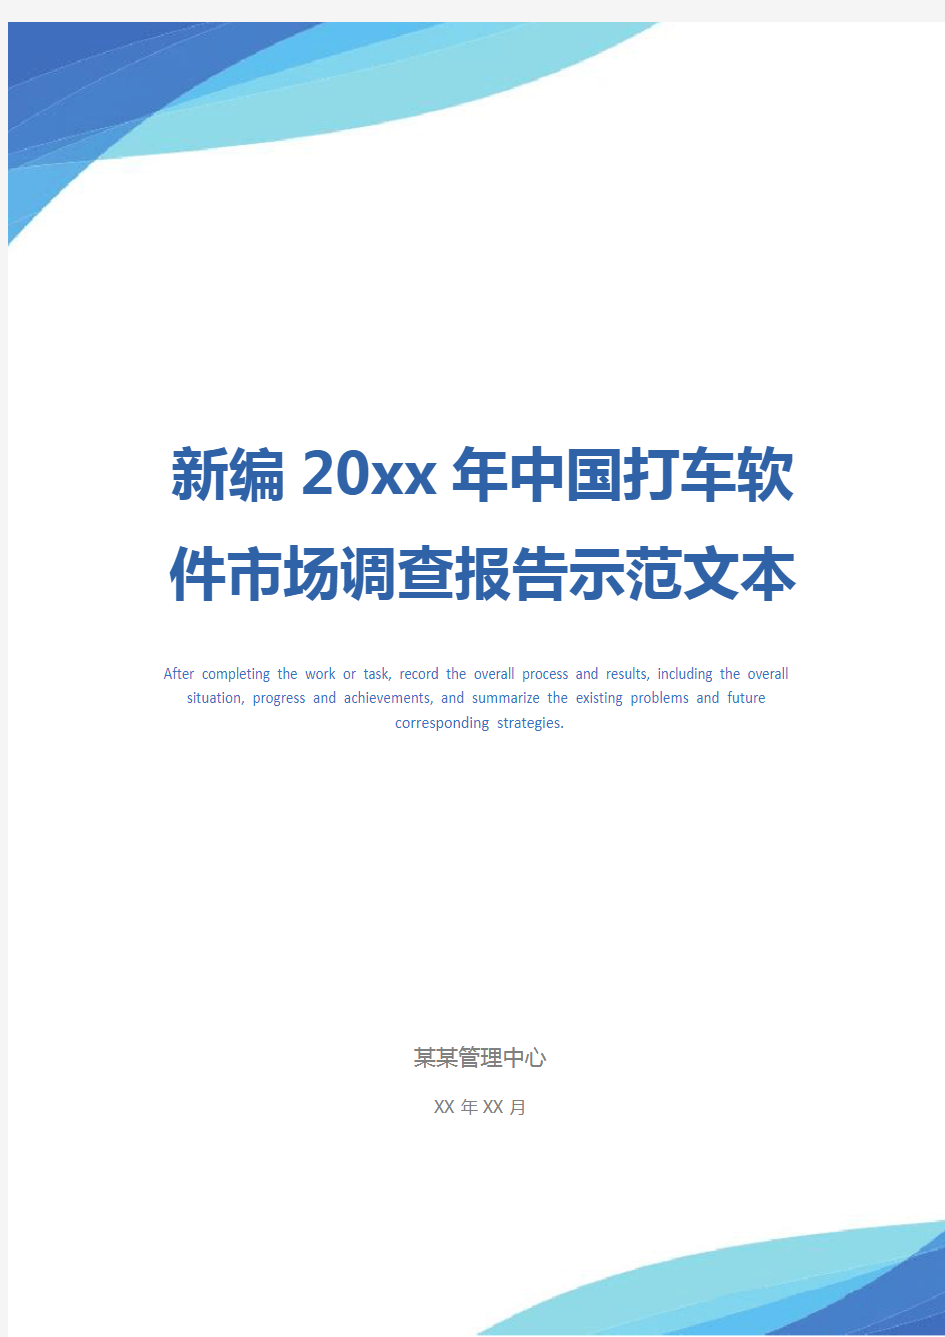 新编20xx年中国打车软件市场调查报告示范文本